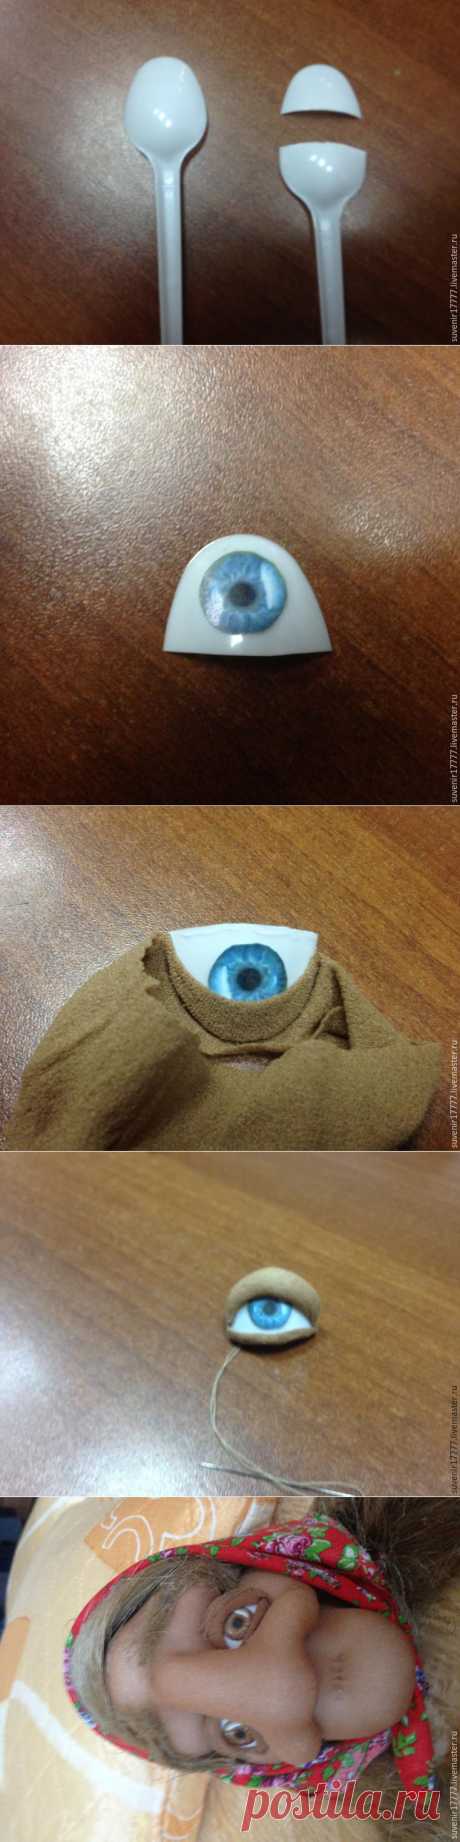 Мастер-класс: глазки для куклы из того, что есть под рукой - Ярмарка Мастеров - ручная работа, handmade